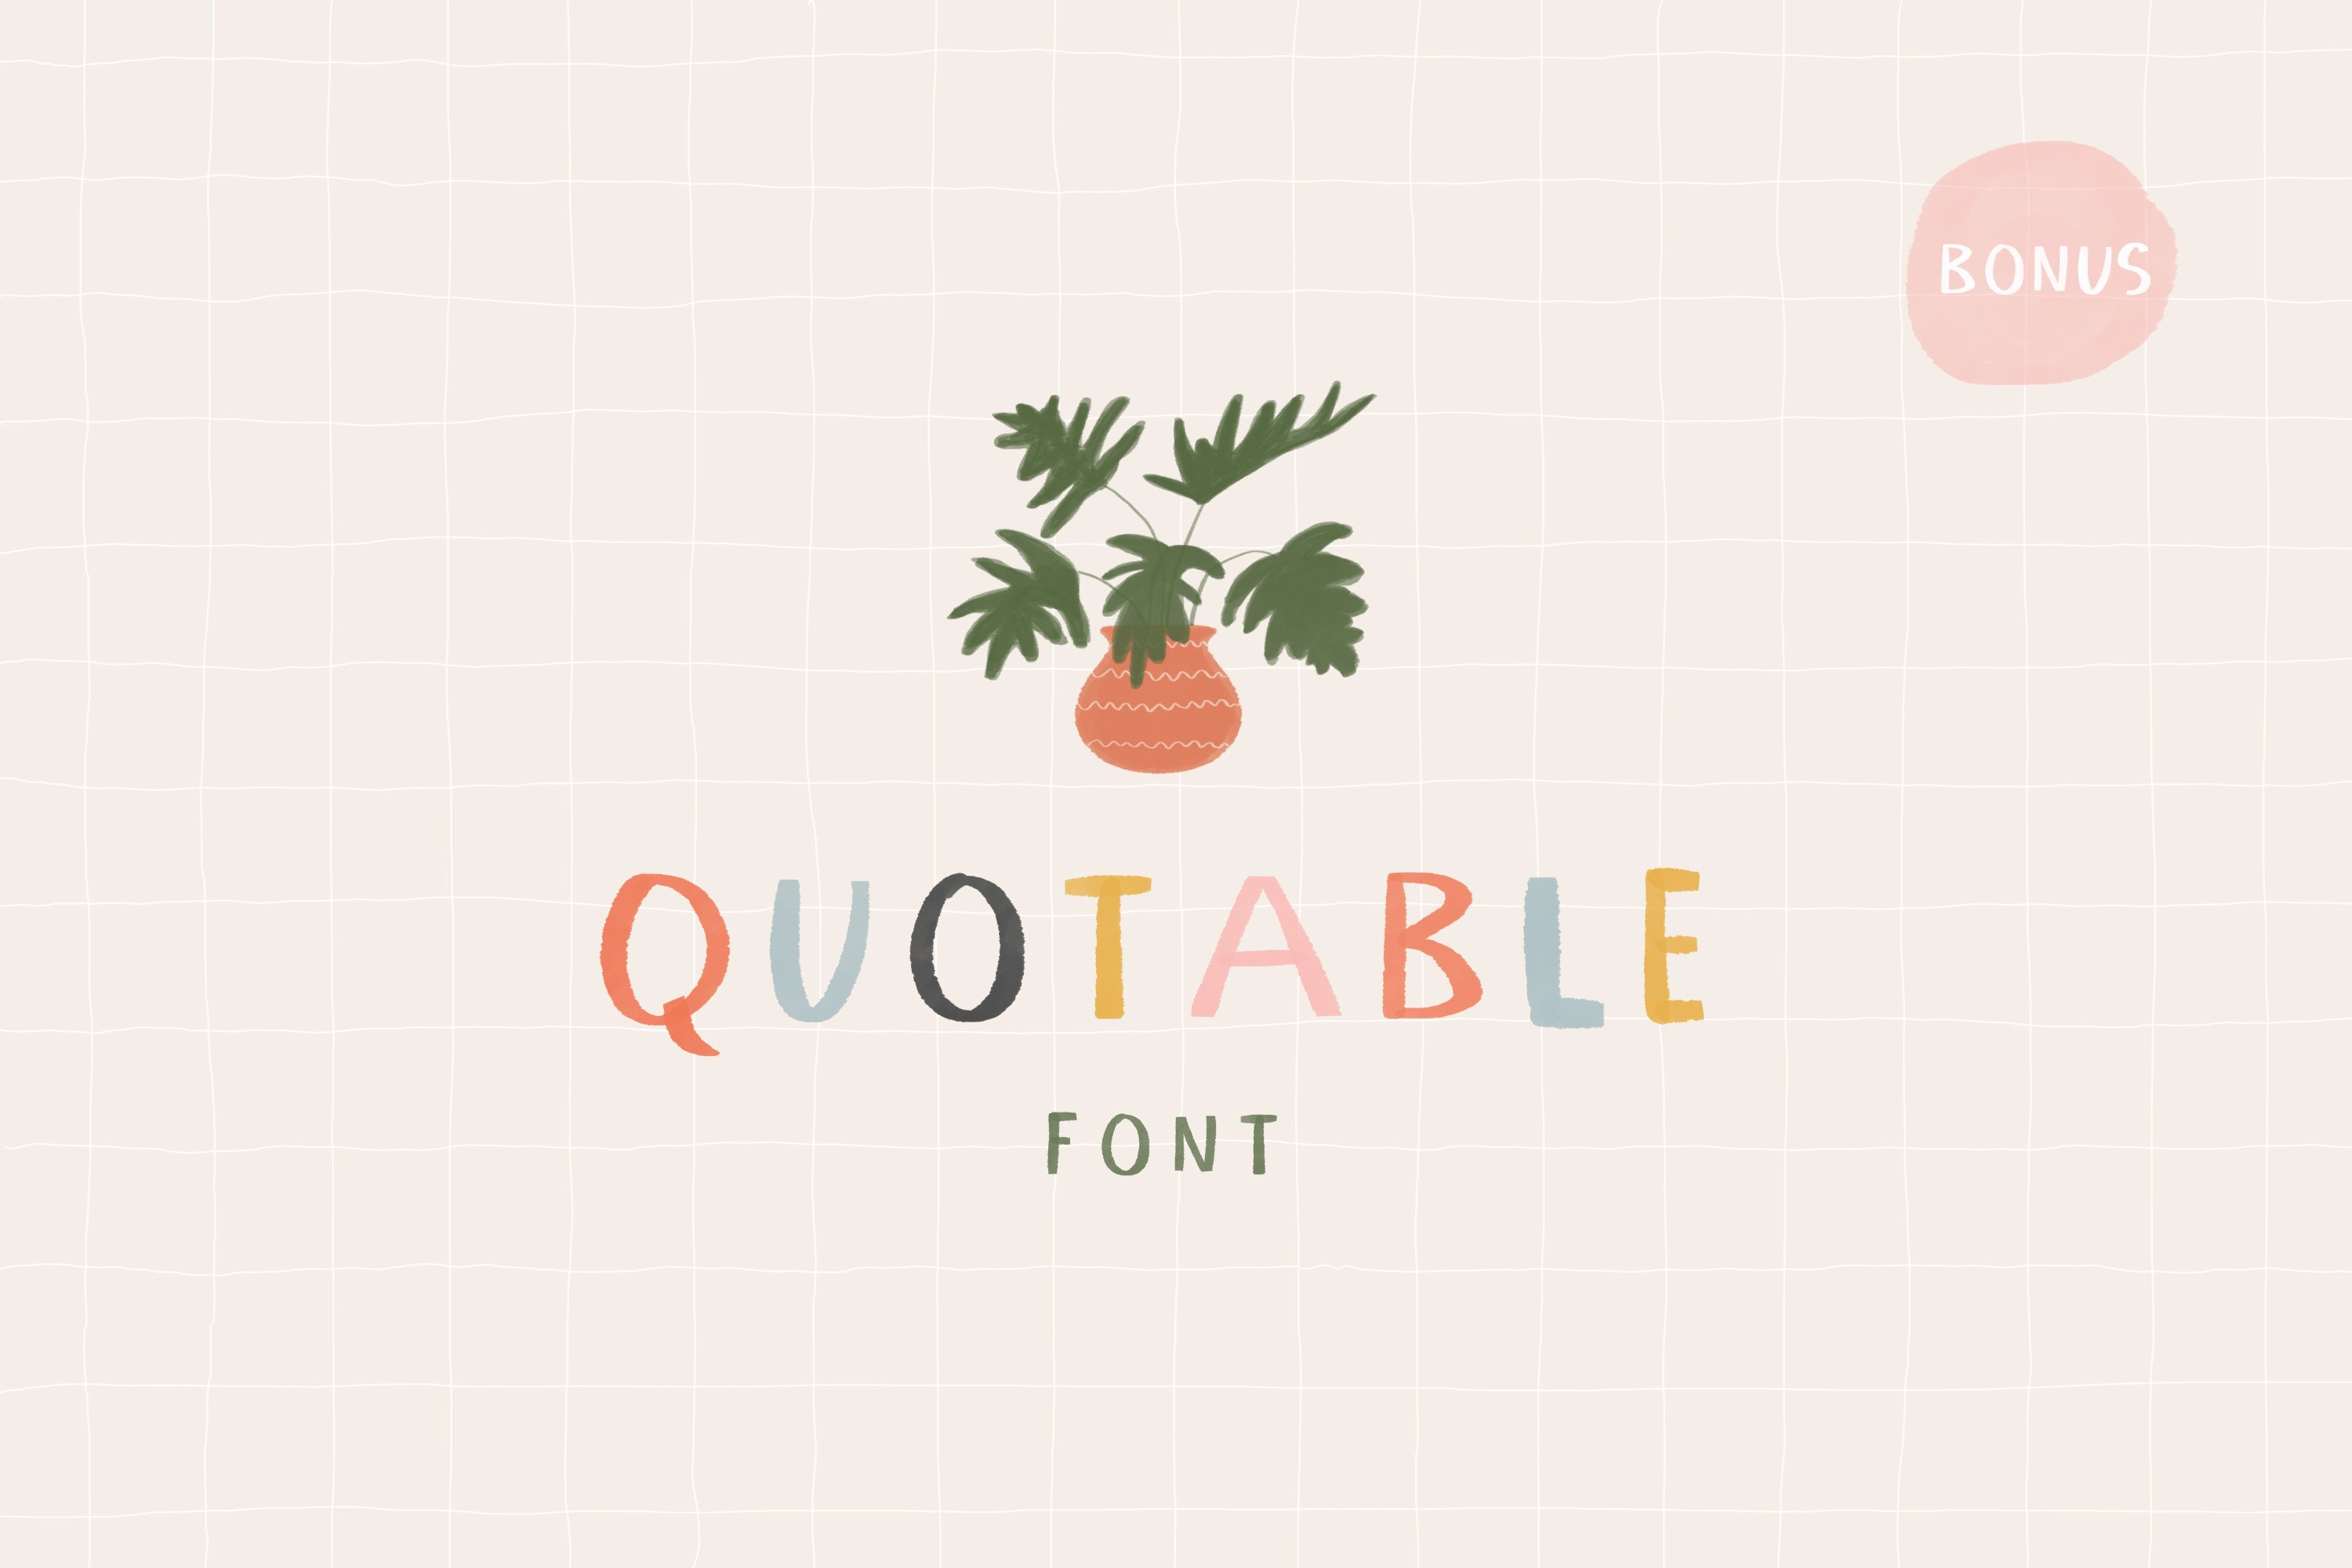 Quotable Font | Color Font cover image.